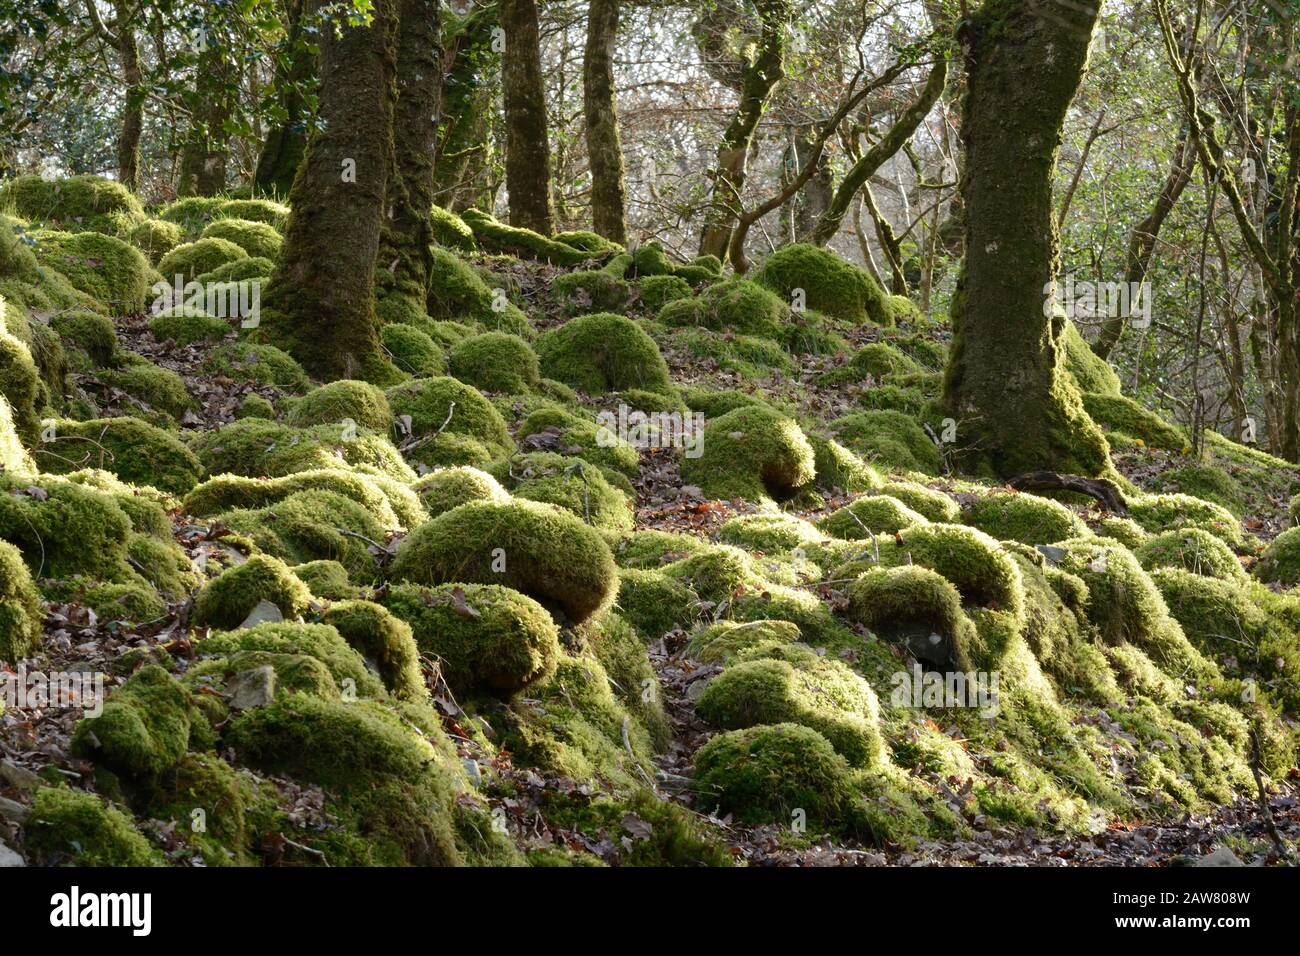 Muschio e lichen ricoperti di massi e speroni rocciosi Coed Ty Canol National Nature Reserve gallese antico bosco Pembrokeshire Galles UK Foto Stock